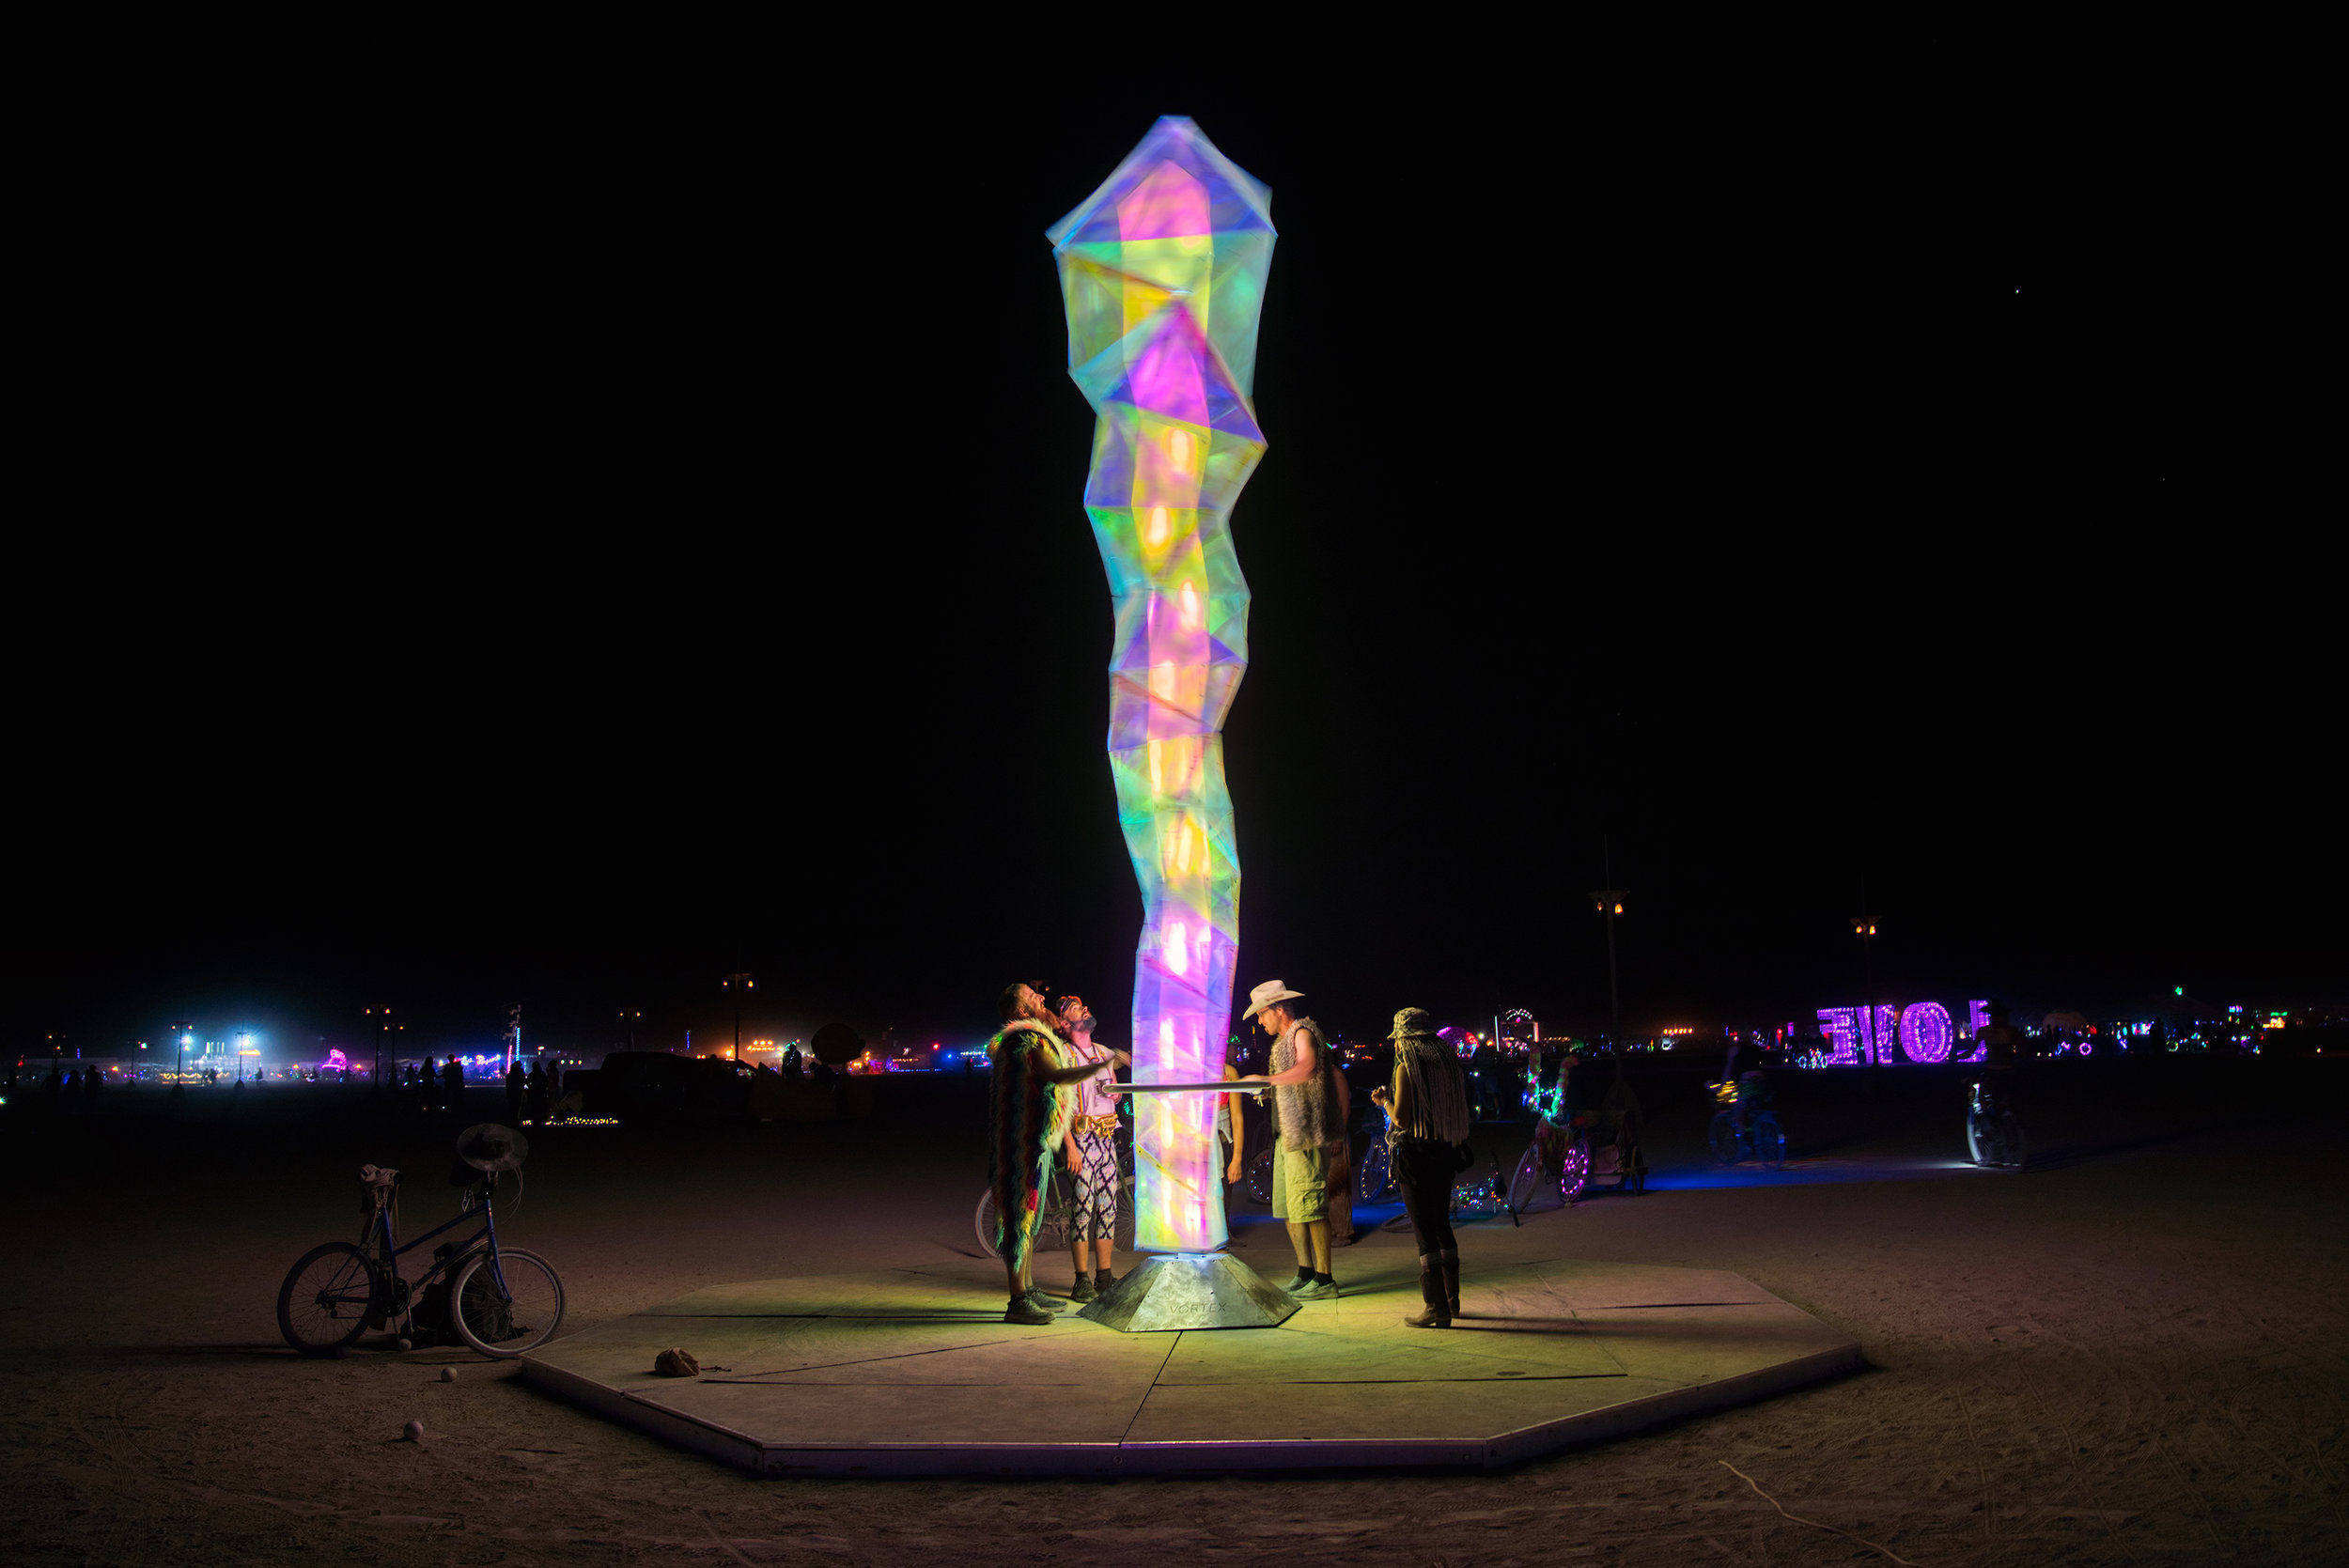 Burning Man 2019 - The Vortex